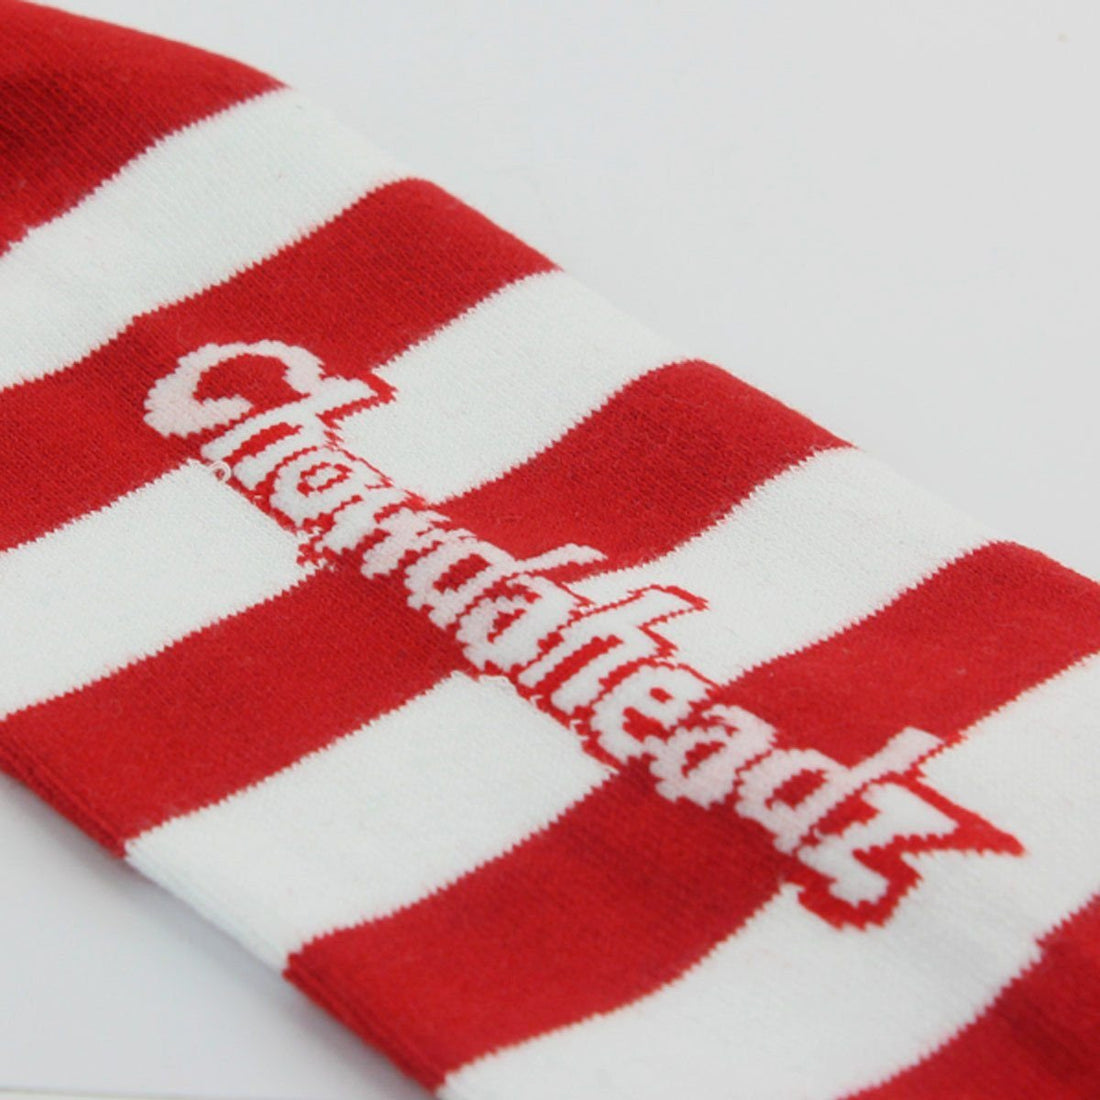 Stars & Stripes USA Crew Socks - Chowdaheadz